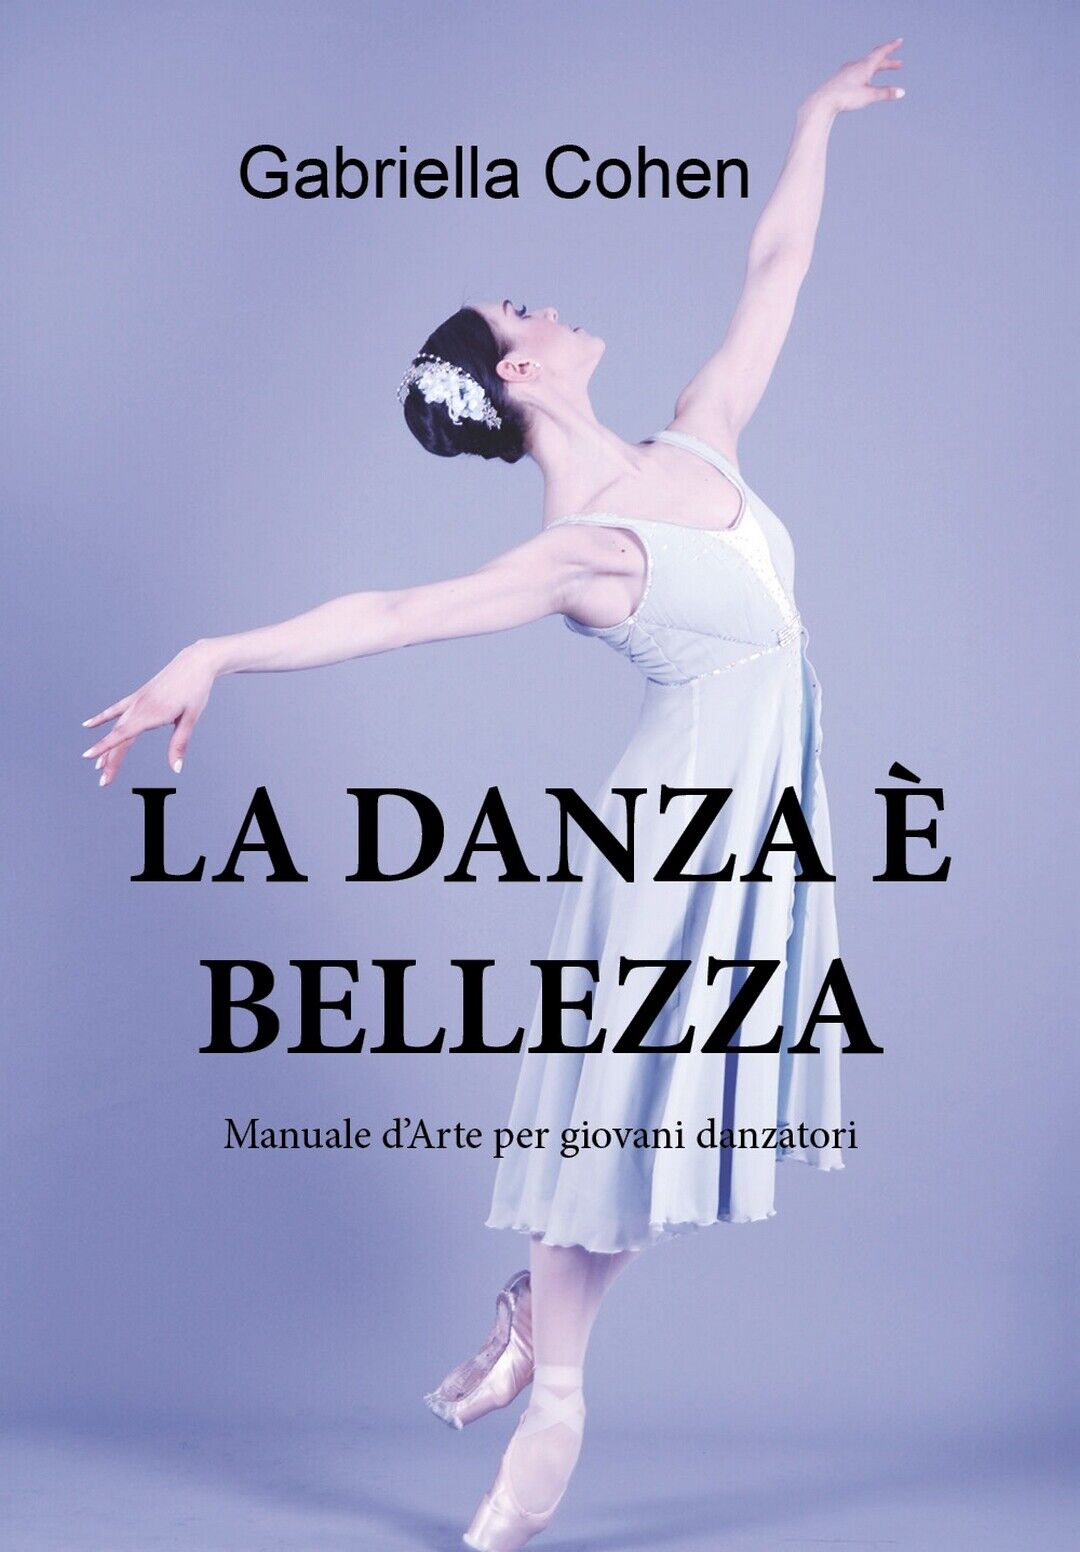 La danza ? bellezza - Manuale d'arte per giovani danzatori  di Gabriella Cohen libro usato